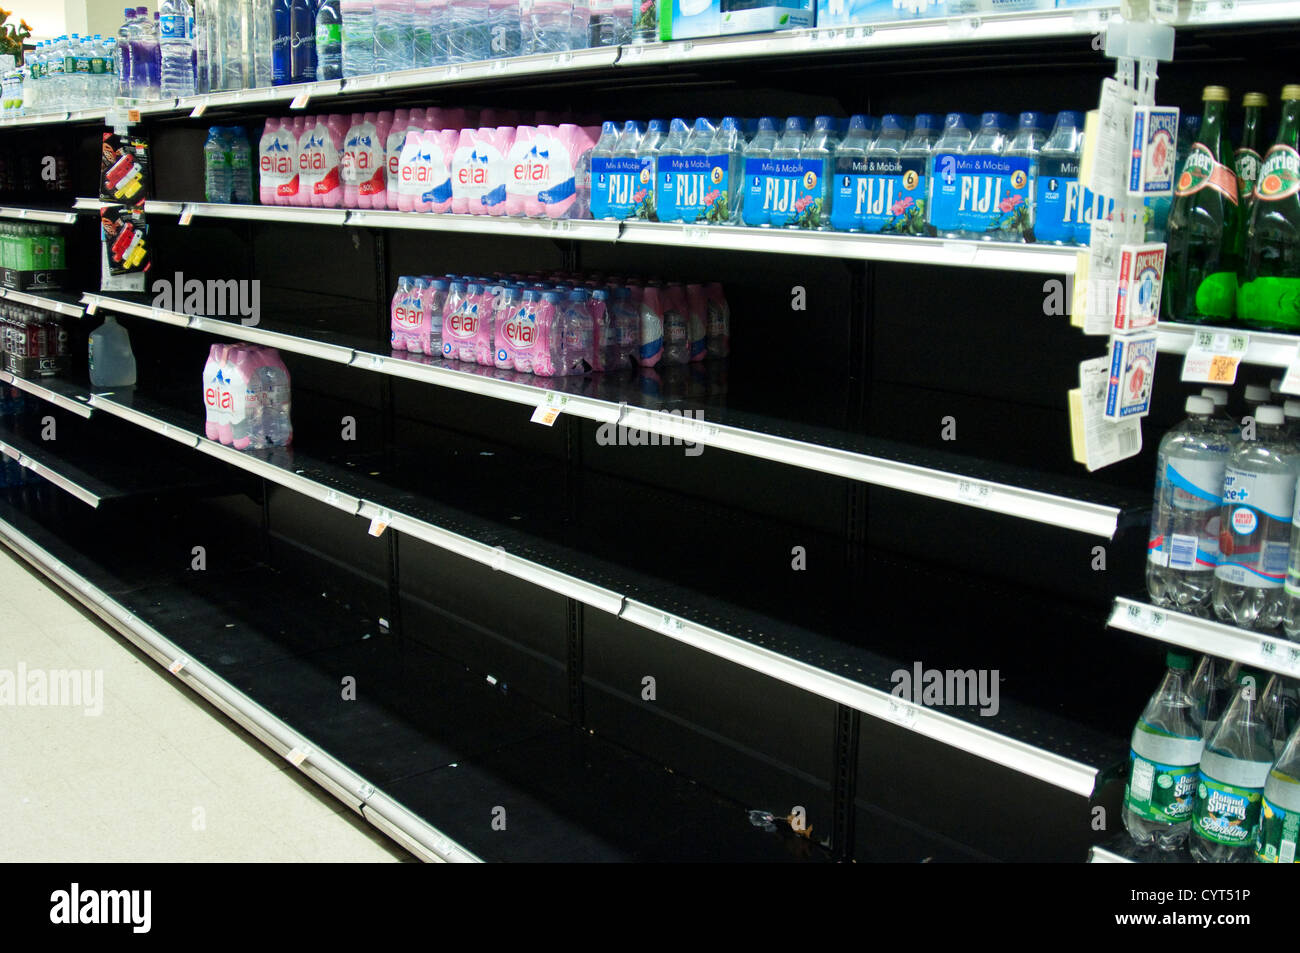 Leere Regale im Supermarkt Könige in Cresskill, New Jersey, Beweise von Panikkäufen im Zuge der Hurrikan Sandy die Okt 2012 getroffen. Stockfoto